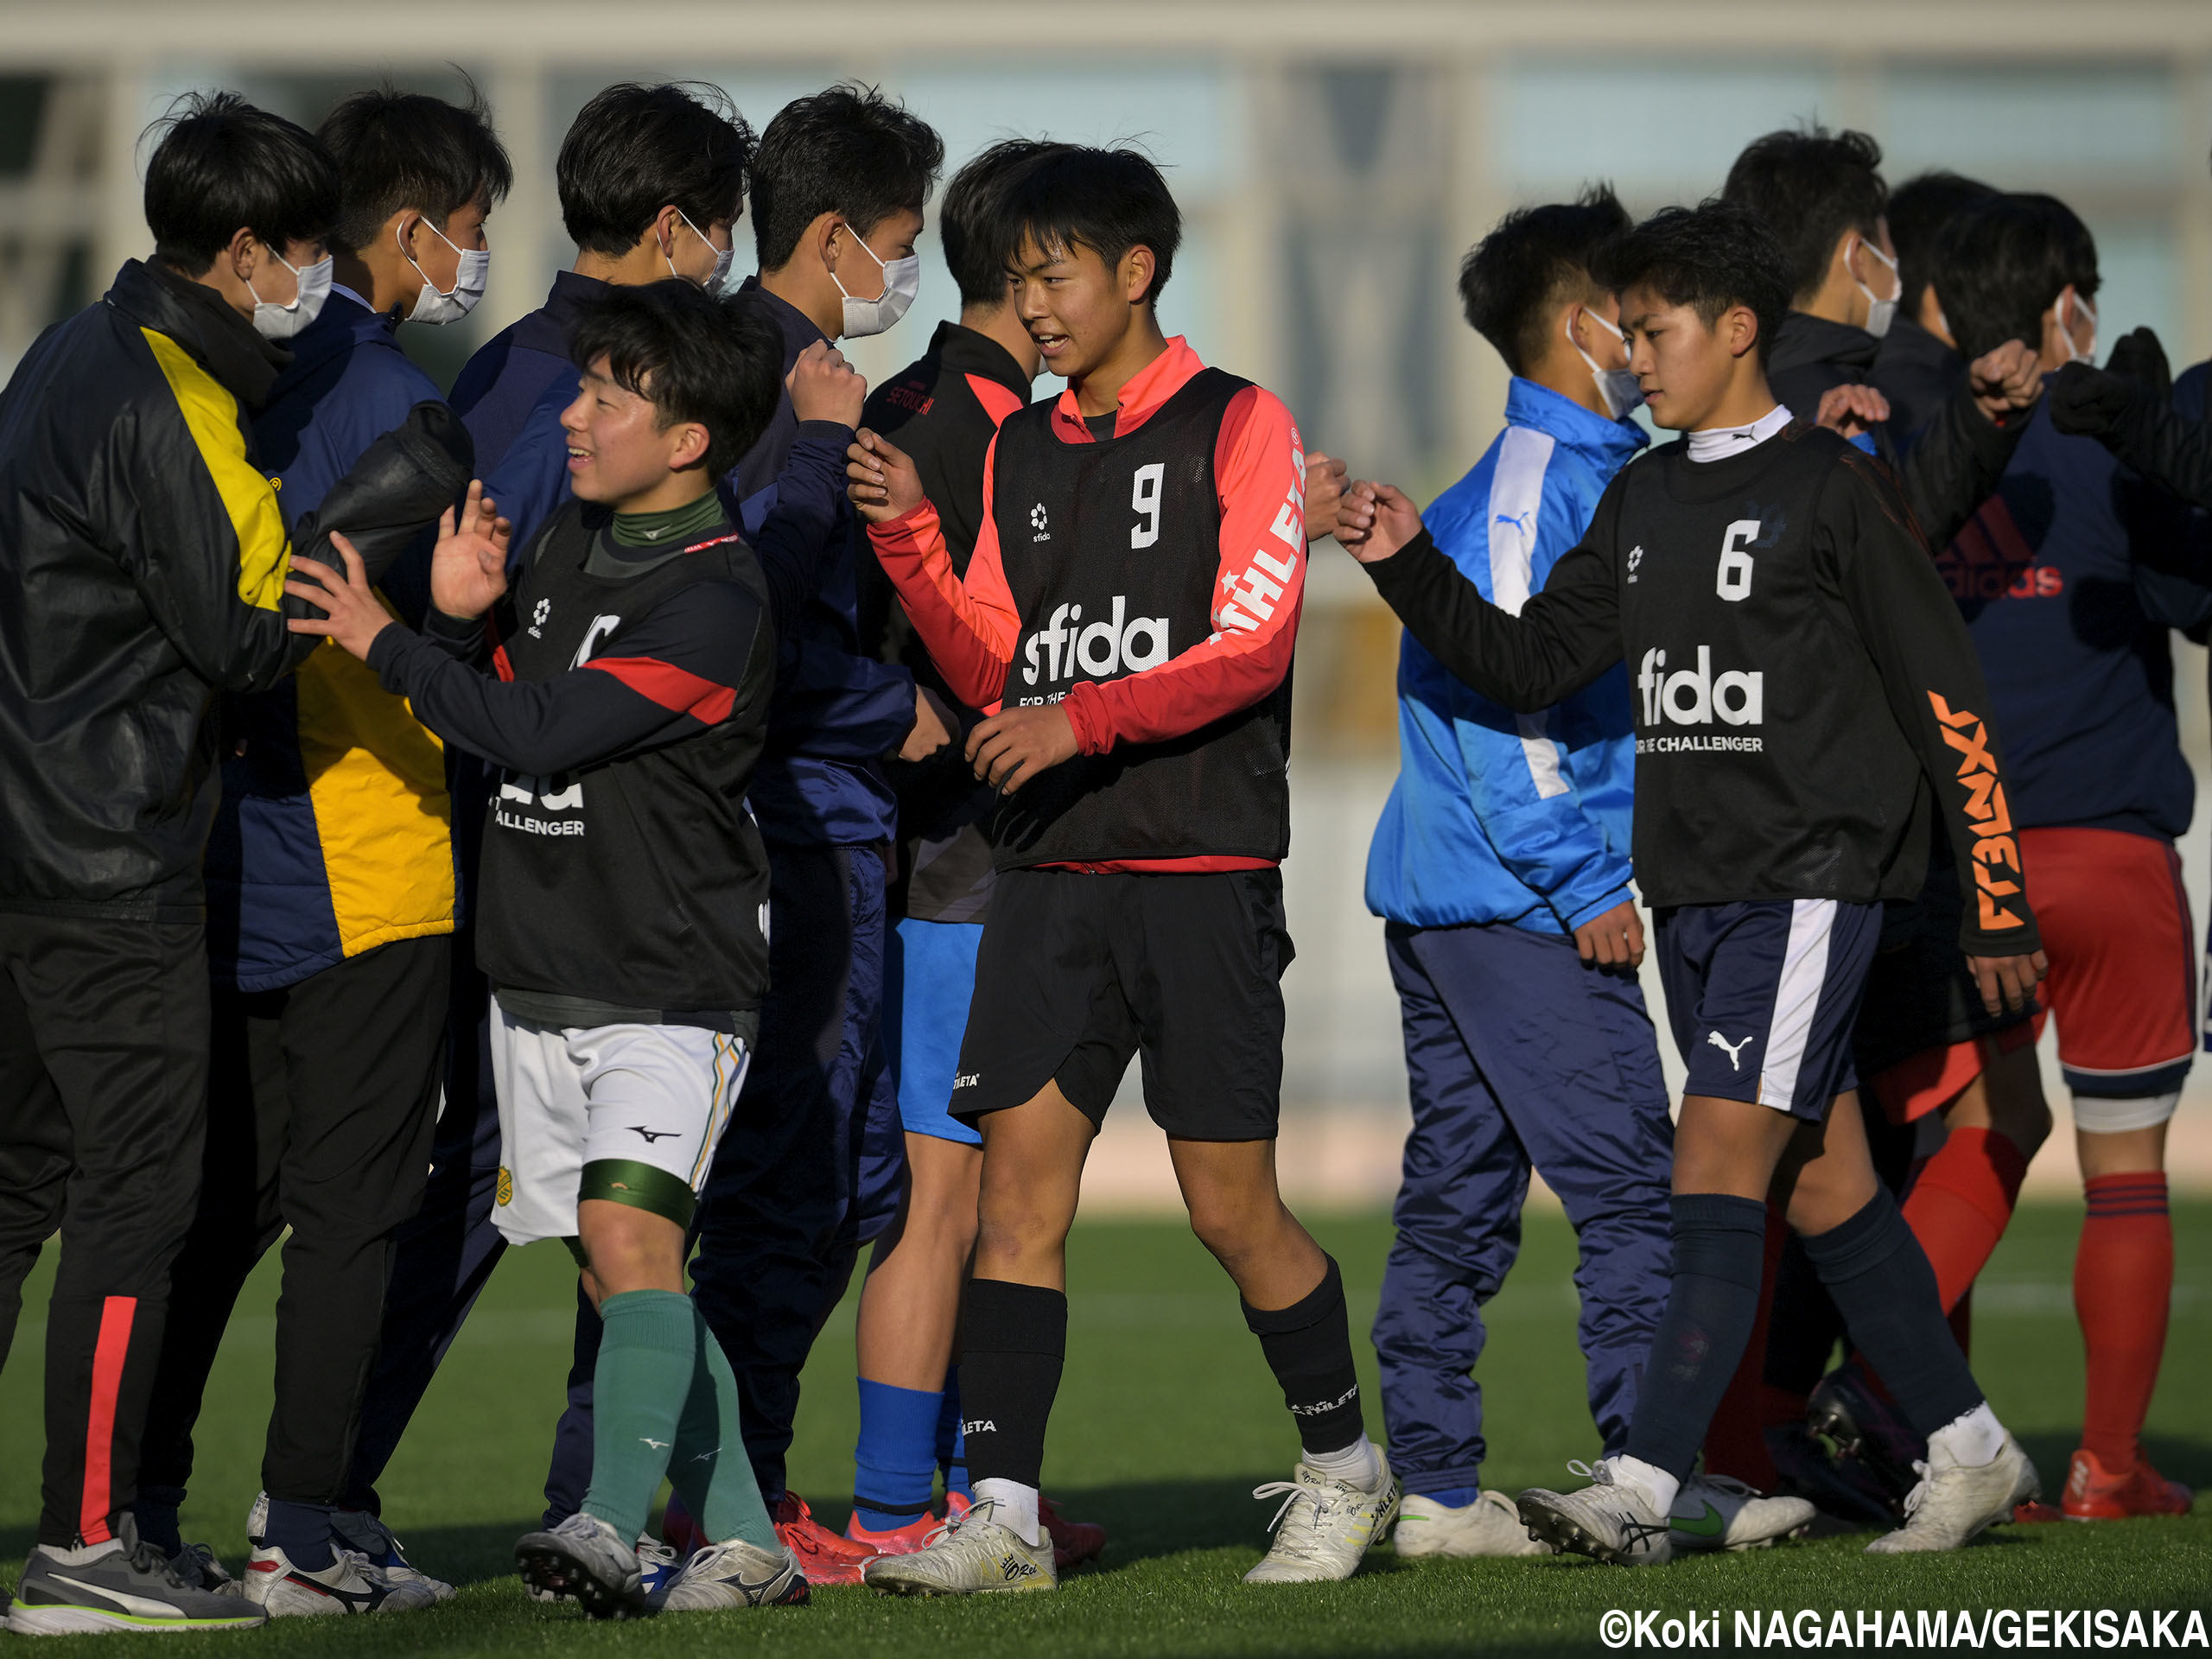 U-18日本高校選抜候補vsU-17日本高校選抜候補第2ラウンドはU-17が4発リベンジ!ユースレフリーも貴重な学び(38枚)